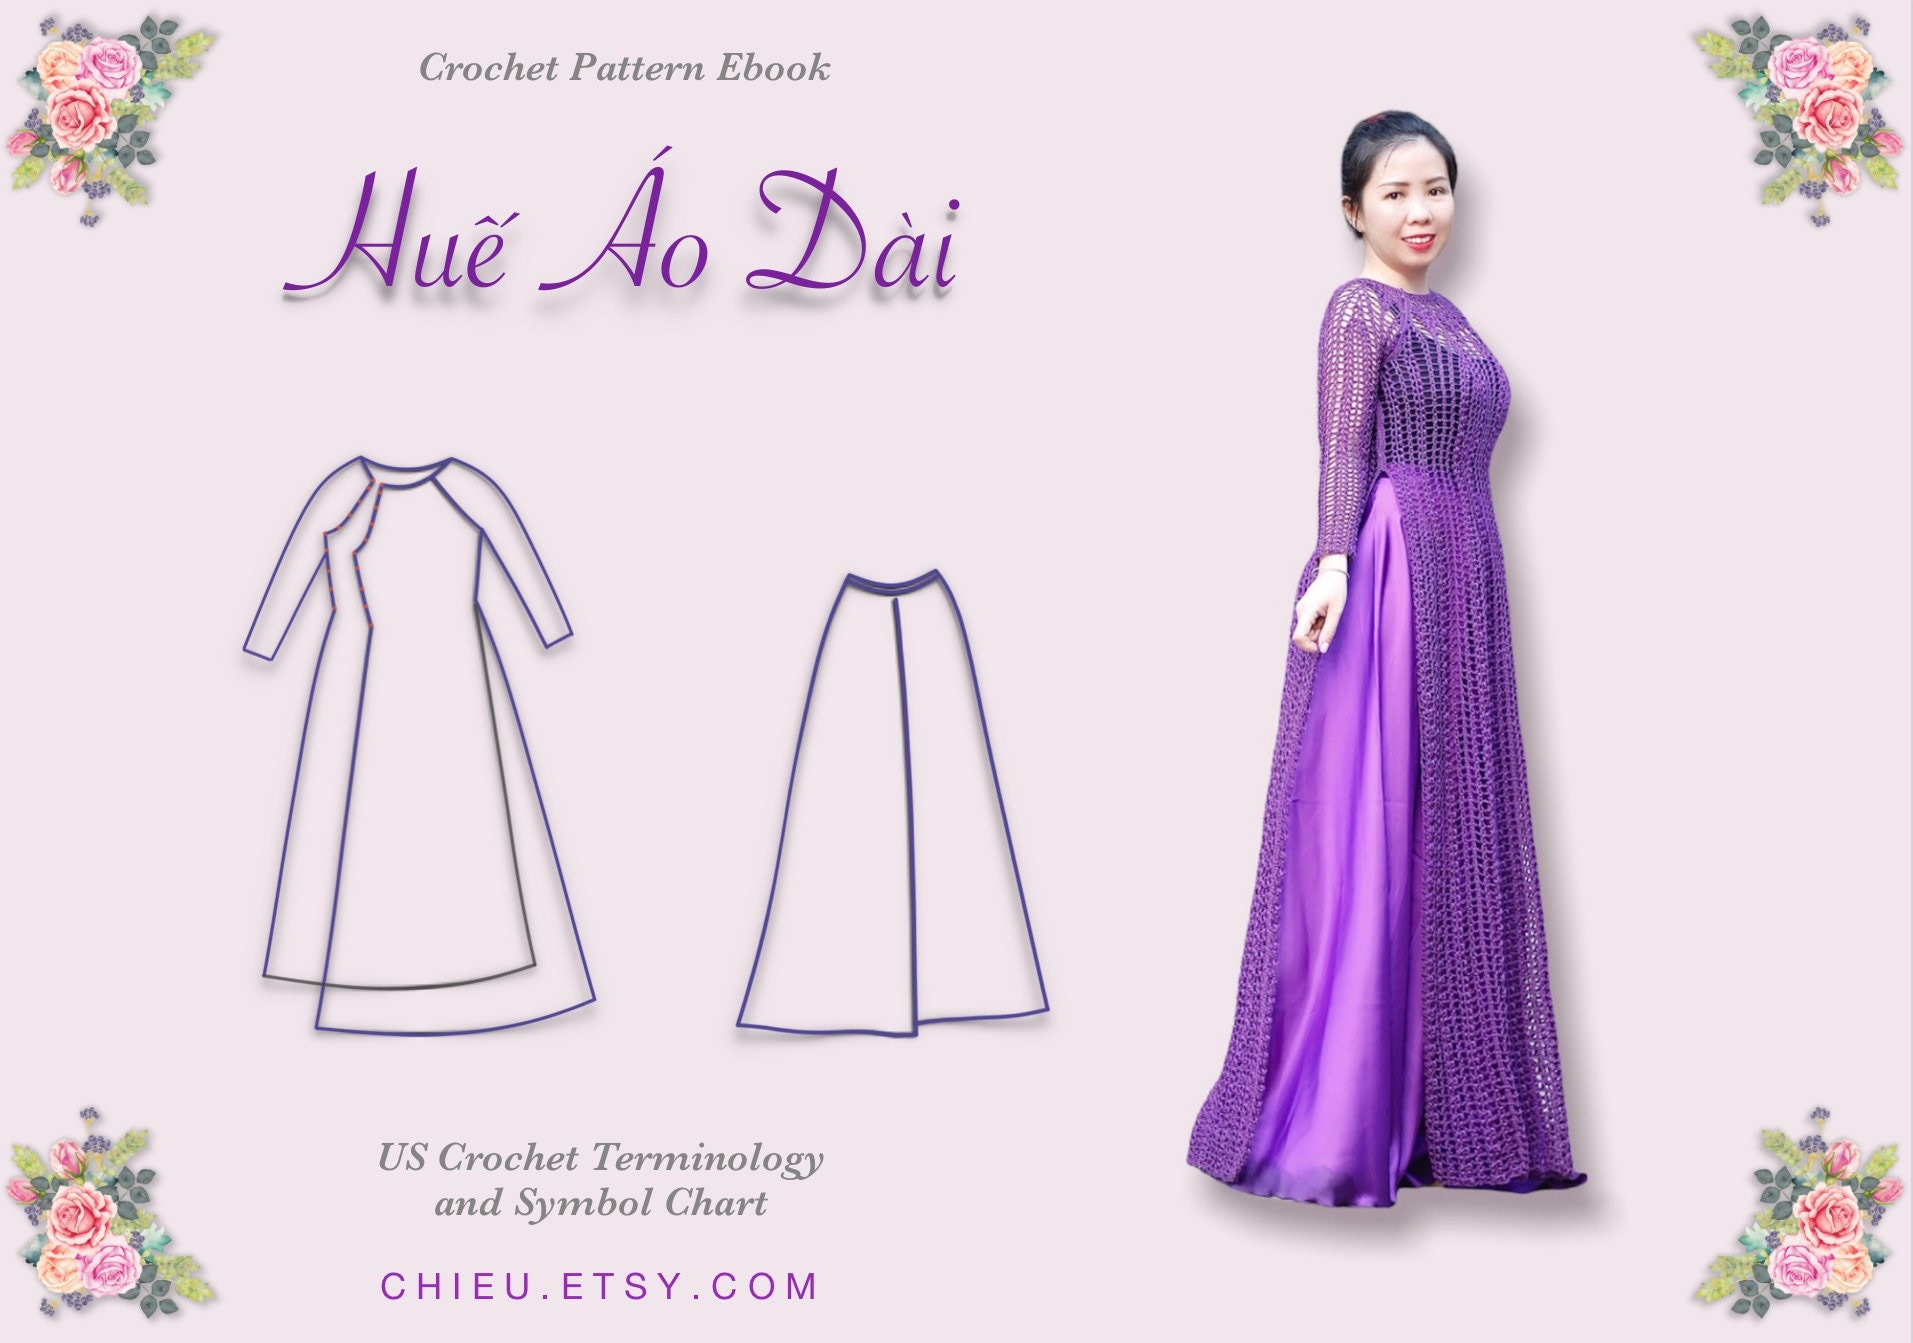 Ao Dai Vietnamese Dress: Áo dài là biểu tượng của truyền thống và văn hóa Việt Nam. Chất liệu vải mềm mại, họa tiết tinh tế và cách cắt may đặc trưng tạo nên sự duyên dáng và quyến rũ cho người mặc. Cùng nhau khám phá và tìm hiểu thêm về loại trang phục này trong những bức ảnh tuyệt đẹp về Áo dài Vietnamese Dress.